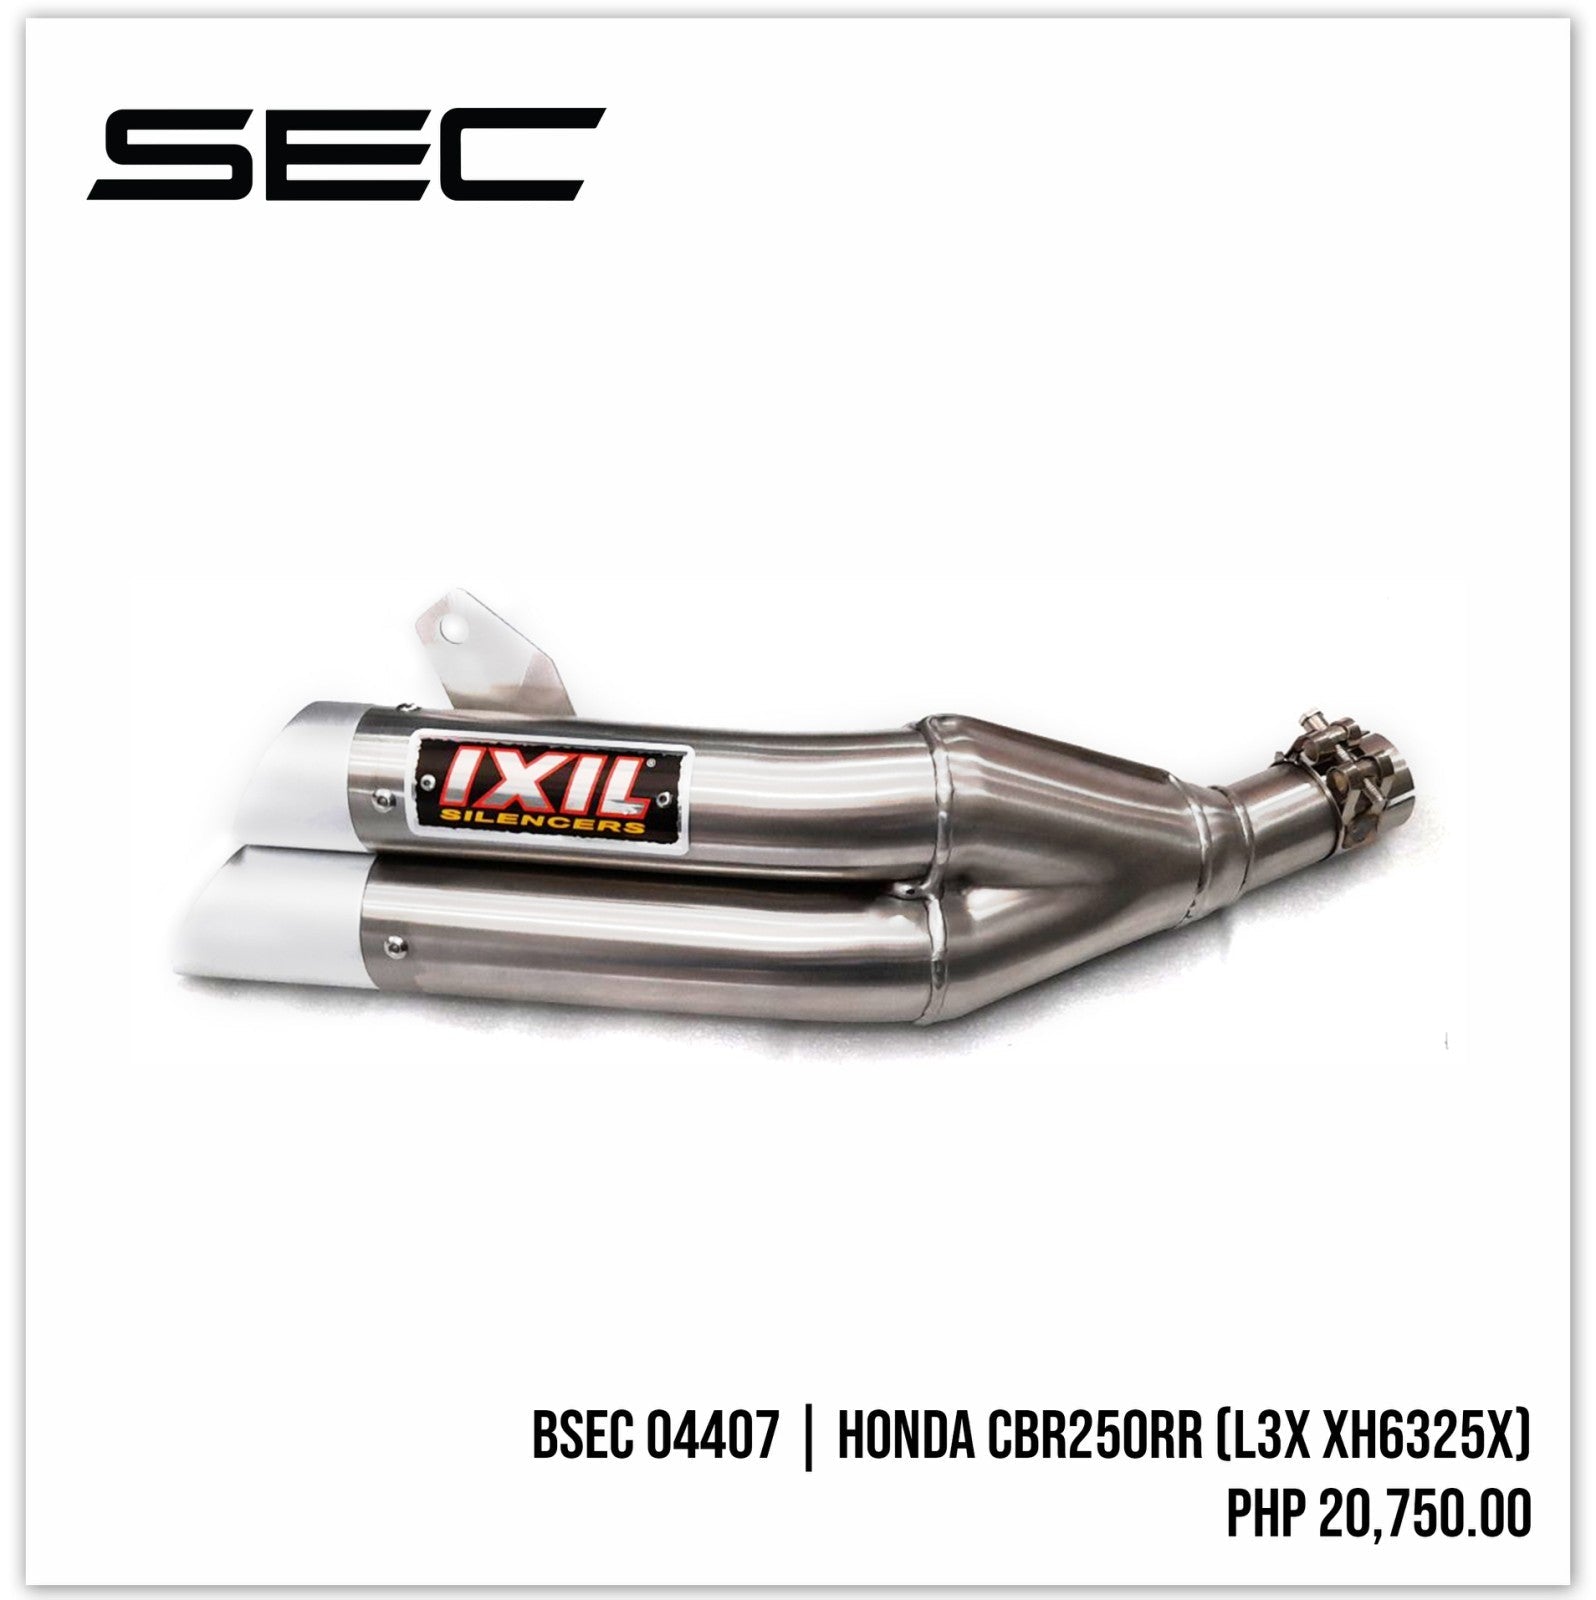 IXIL Honda CBR250RR (L3X XH6325X)